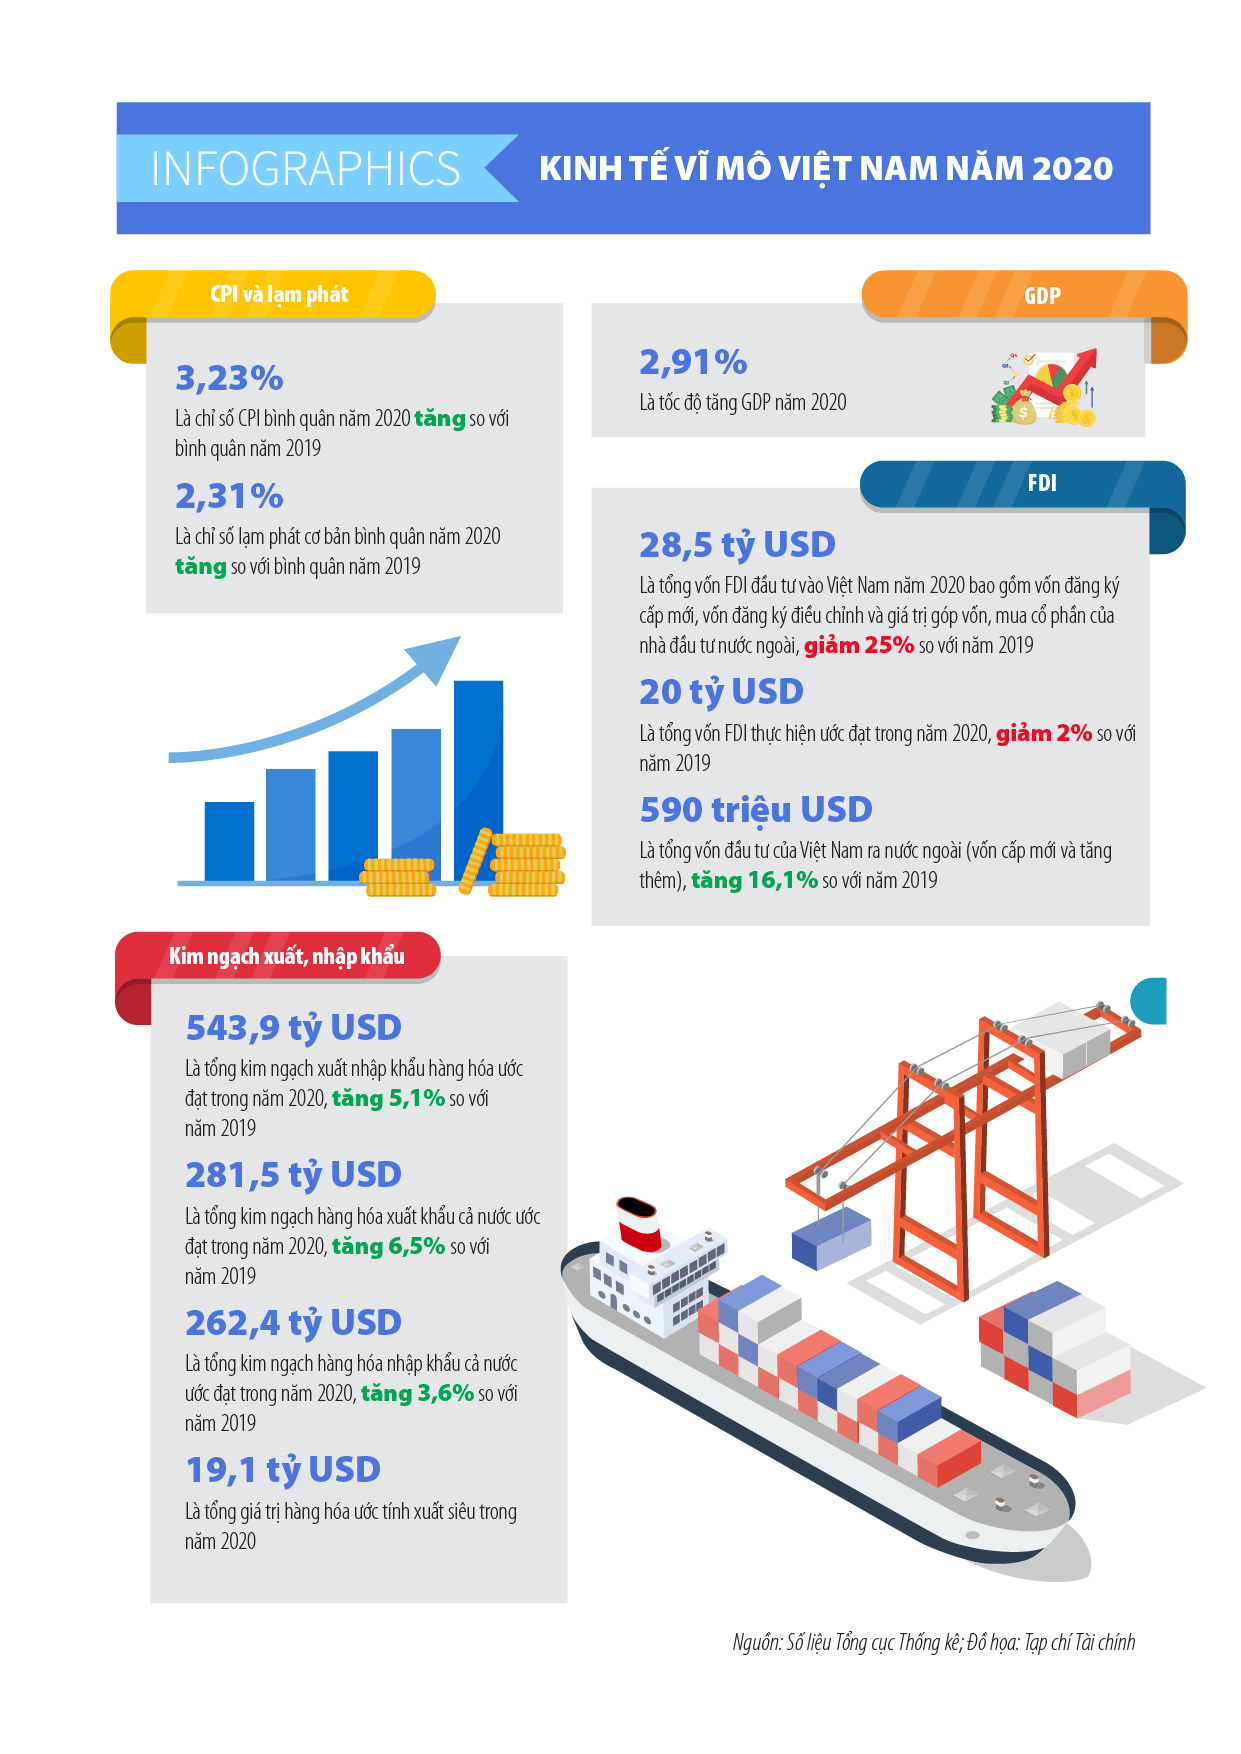 [Infographics] Kinh tế vĩ mô Việt Nam năm 2020 qua những con số - Ảnh 1